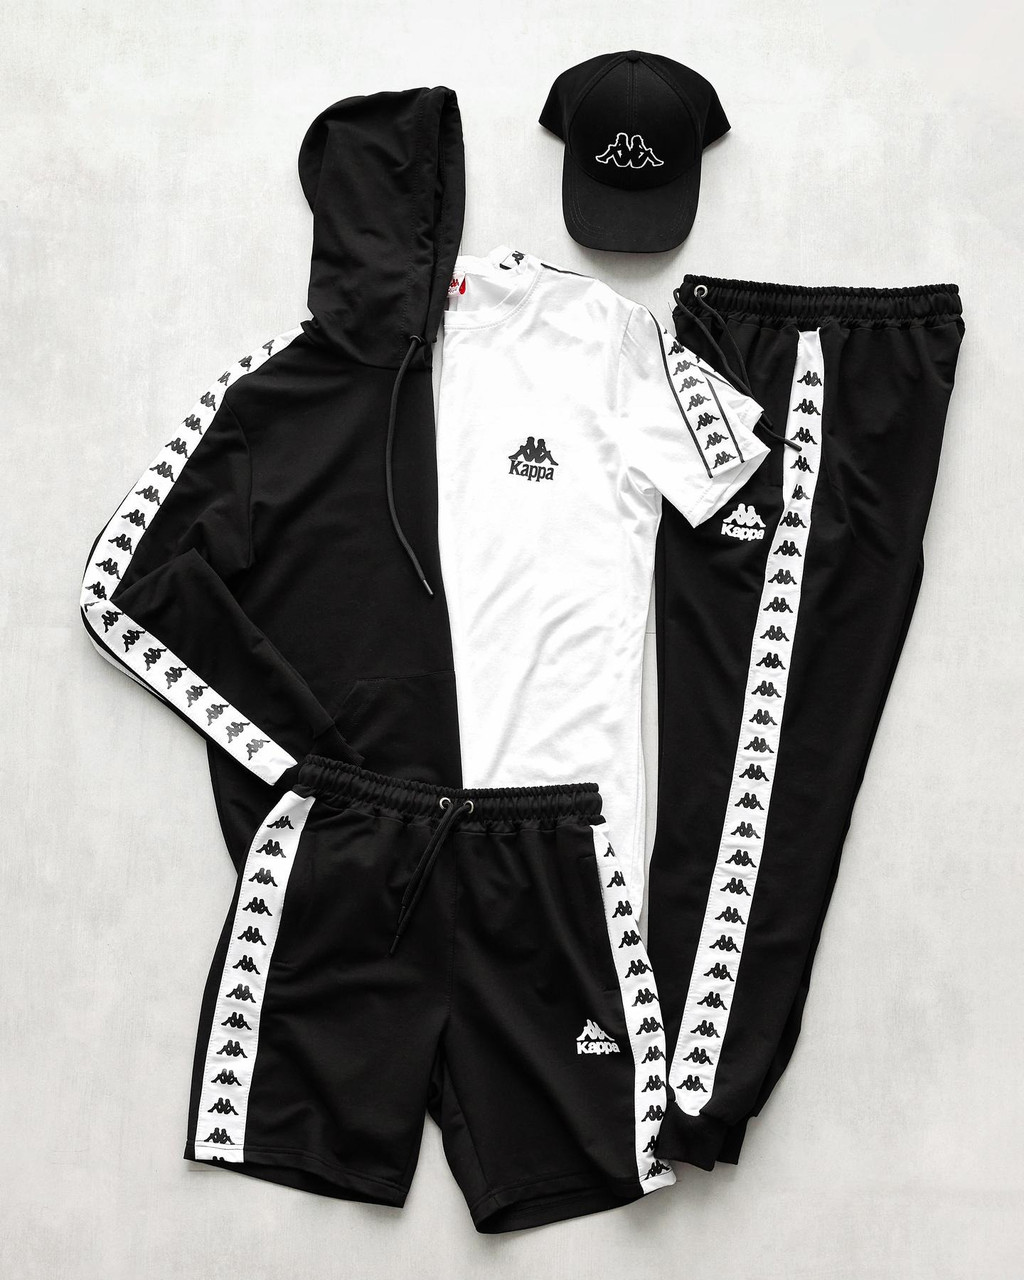 Чоловічий спортивний костюм Kappa + Футболка + Шорти + Кепка чорний Каппа з лампасами